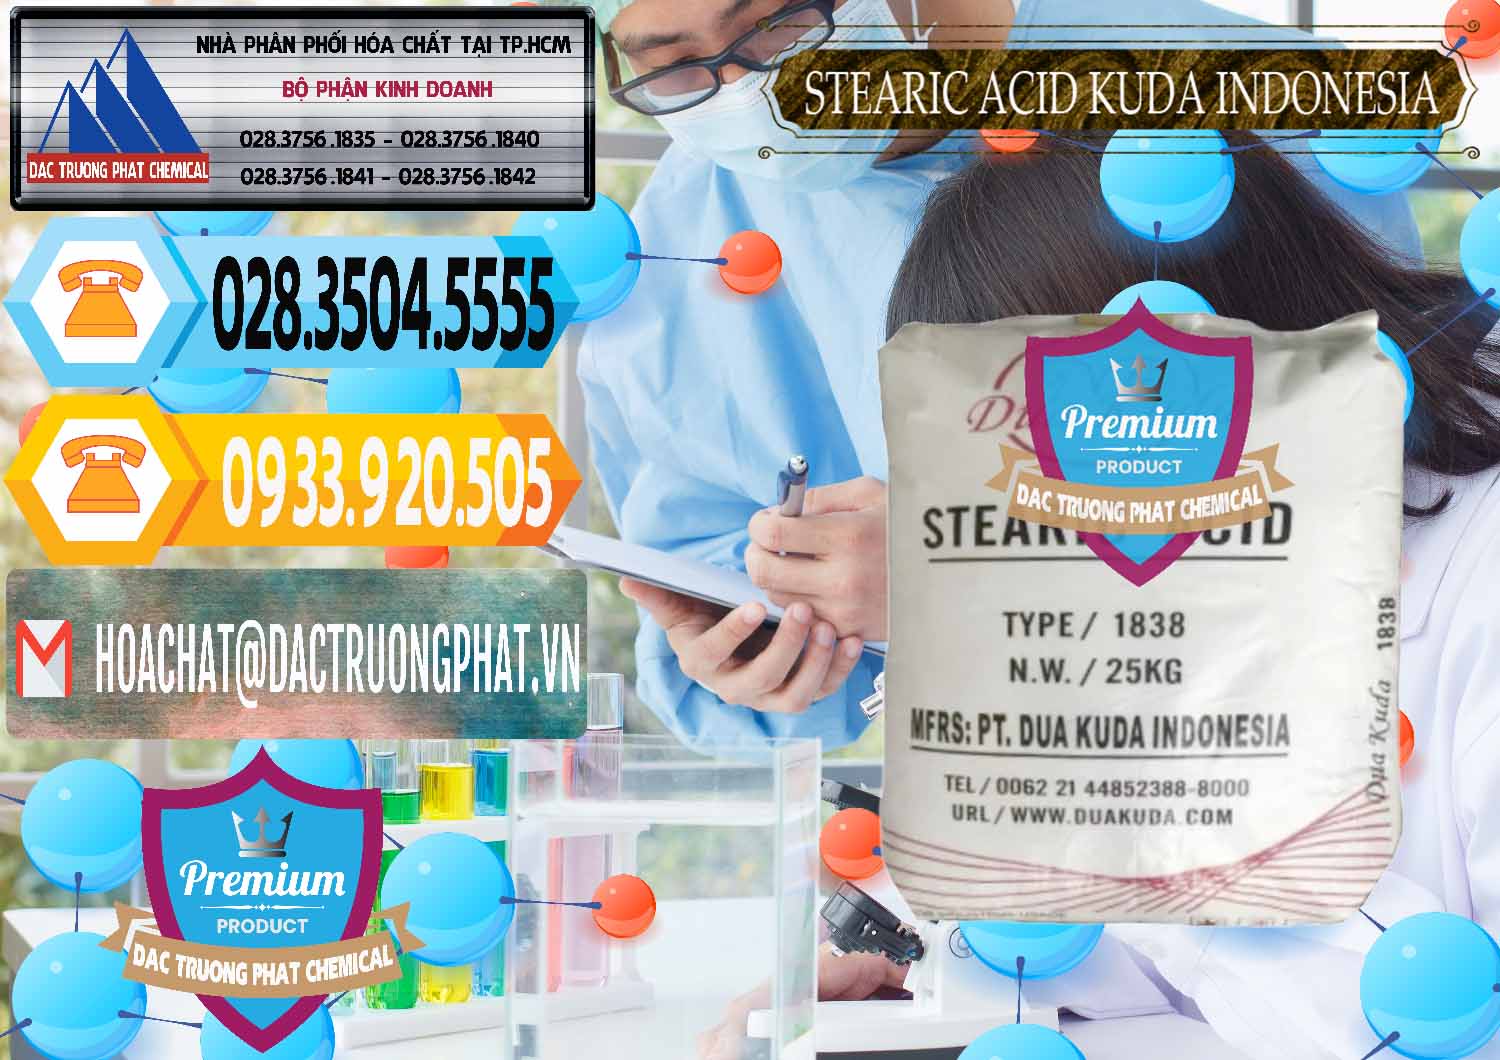 Đơn vị chuyên bán và phân phối Axit Stearic - Stearic Acid Dua Kuda Indonesia - 0388 - Cung cấp & phân phối hóa chất tại TP.HCM - hoachattayrua.net